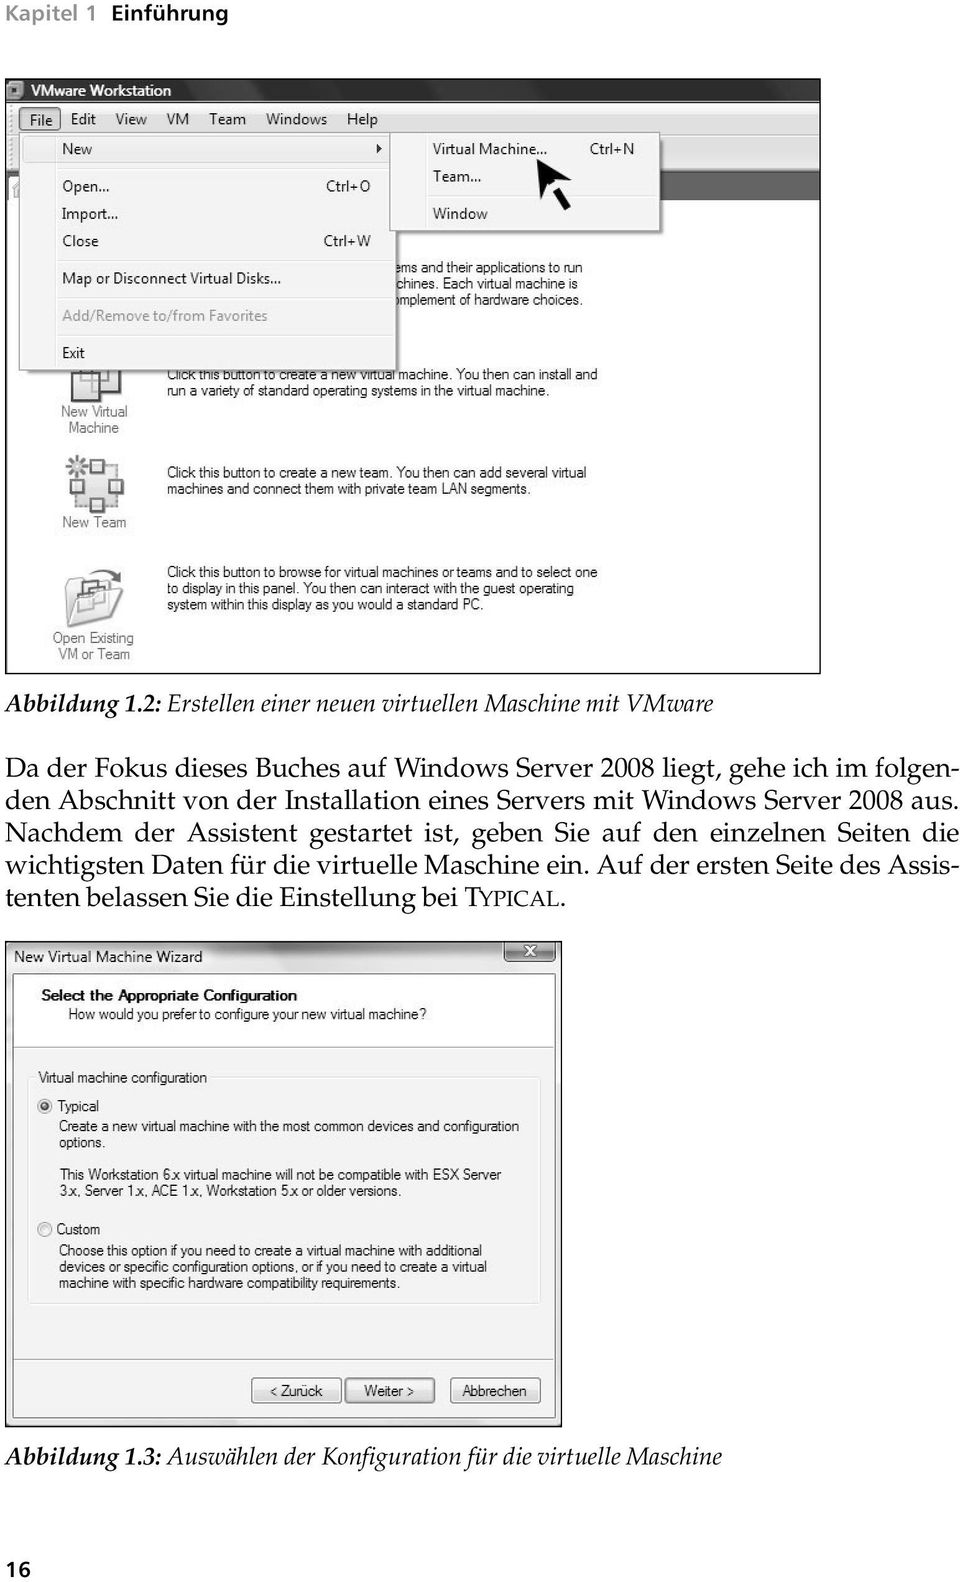 folgenden Abschnitt von der Installation eines Servers mit Windows Server 2008 aus.